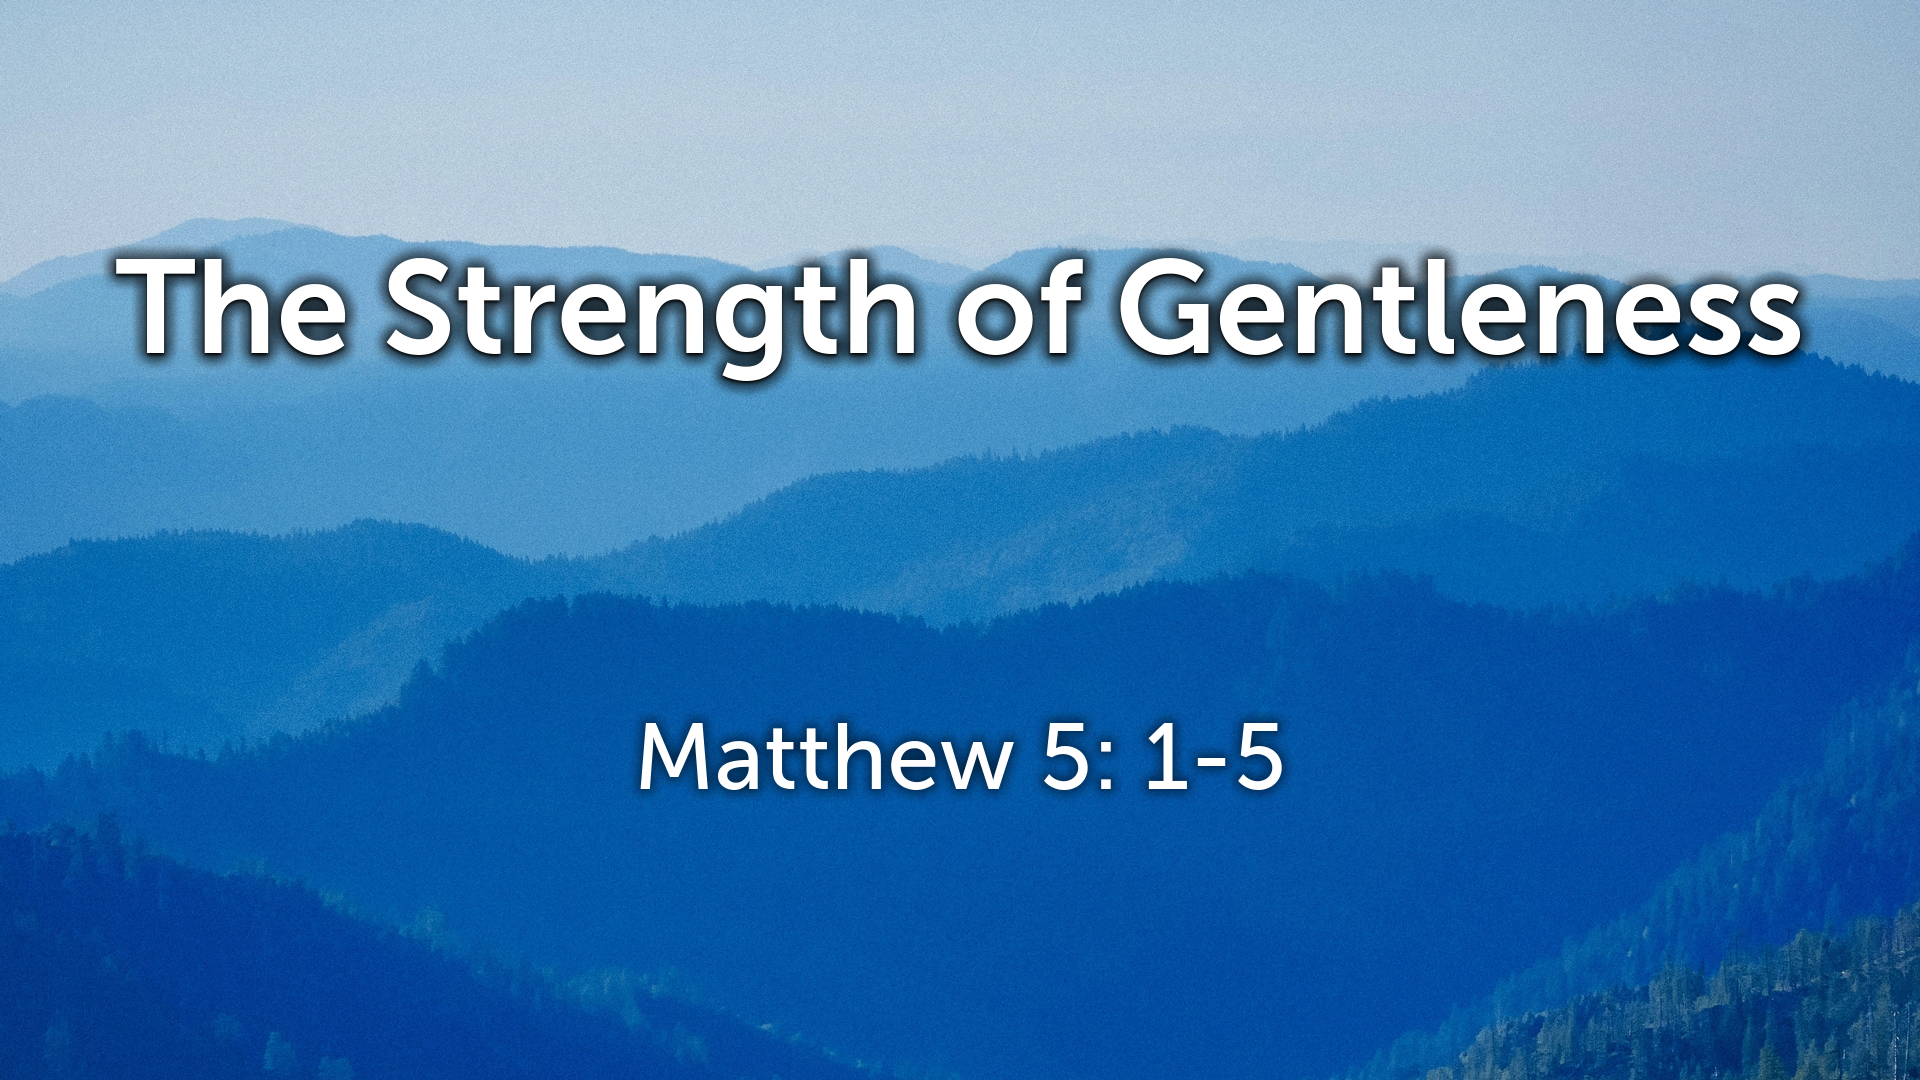 Nov 27, 2022 - The Strength of Gentleness (Video) - Matthew 5: 1-5